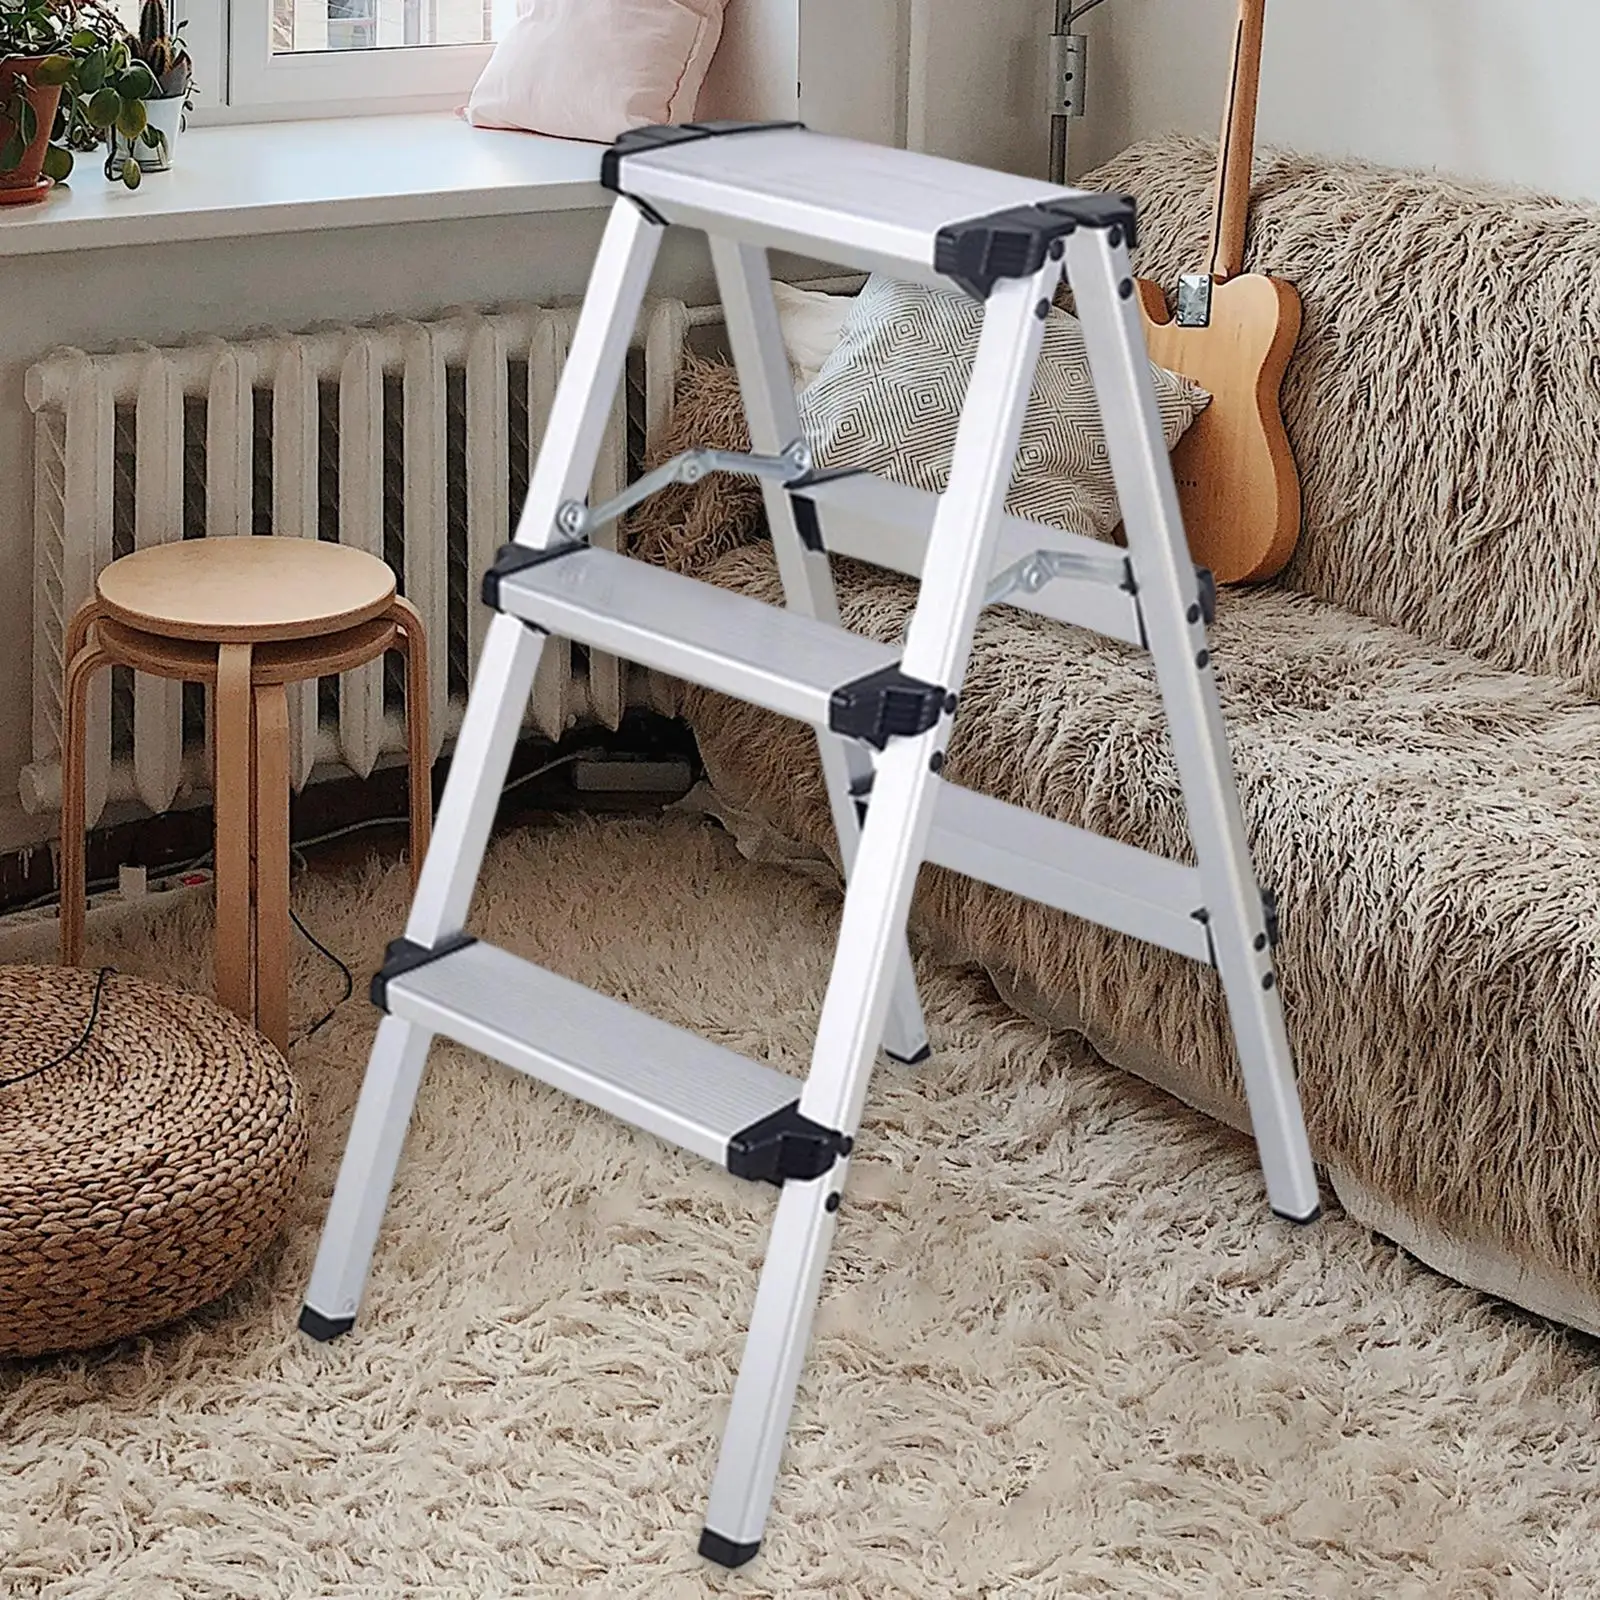 3 Step Stool Herringbone Ladders Storage Shelf Rack Ladders for Outdoor Working Household